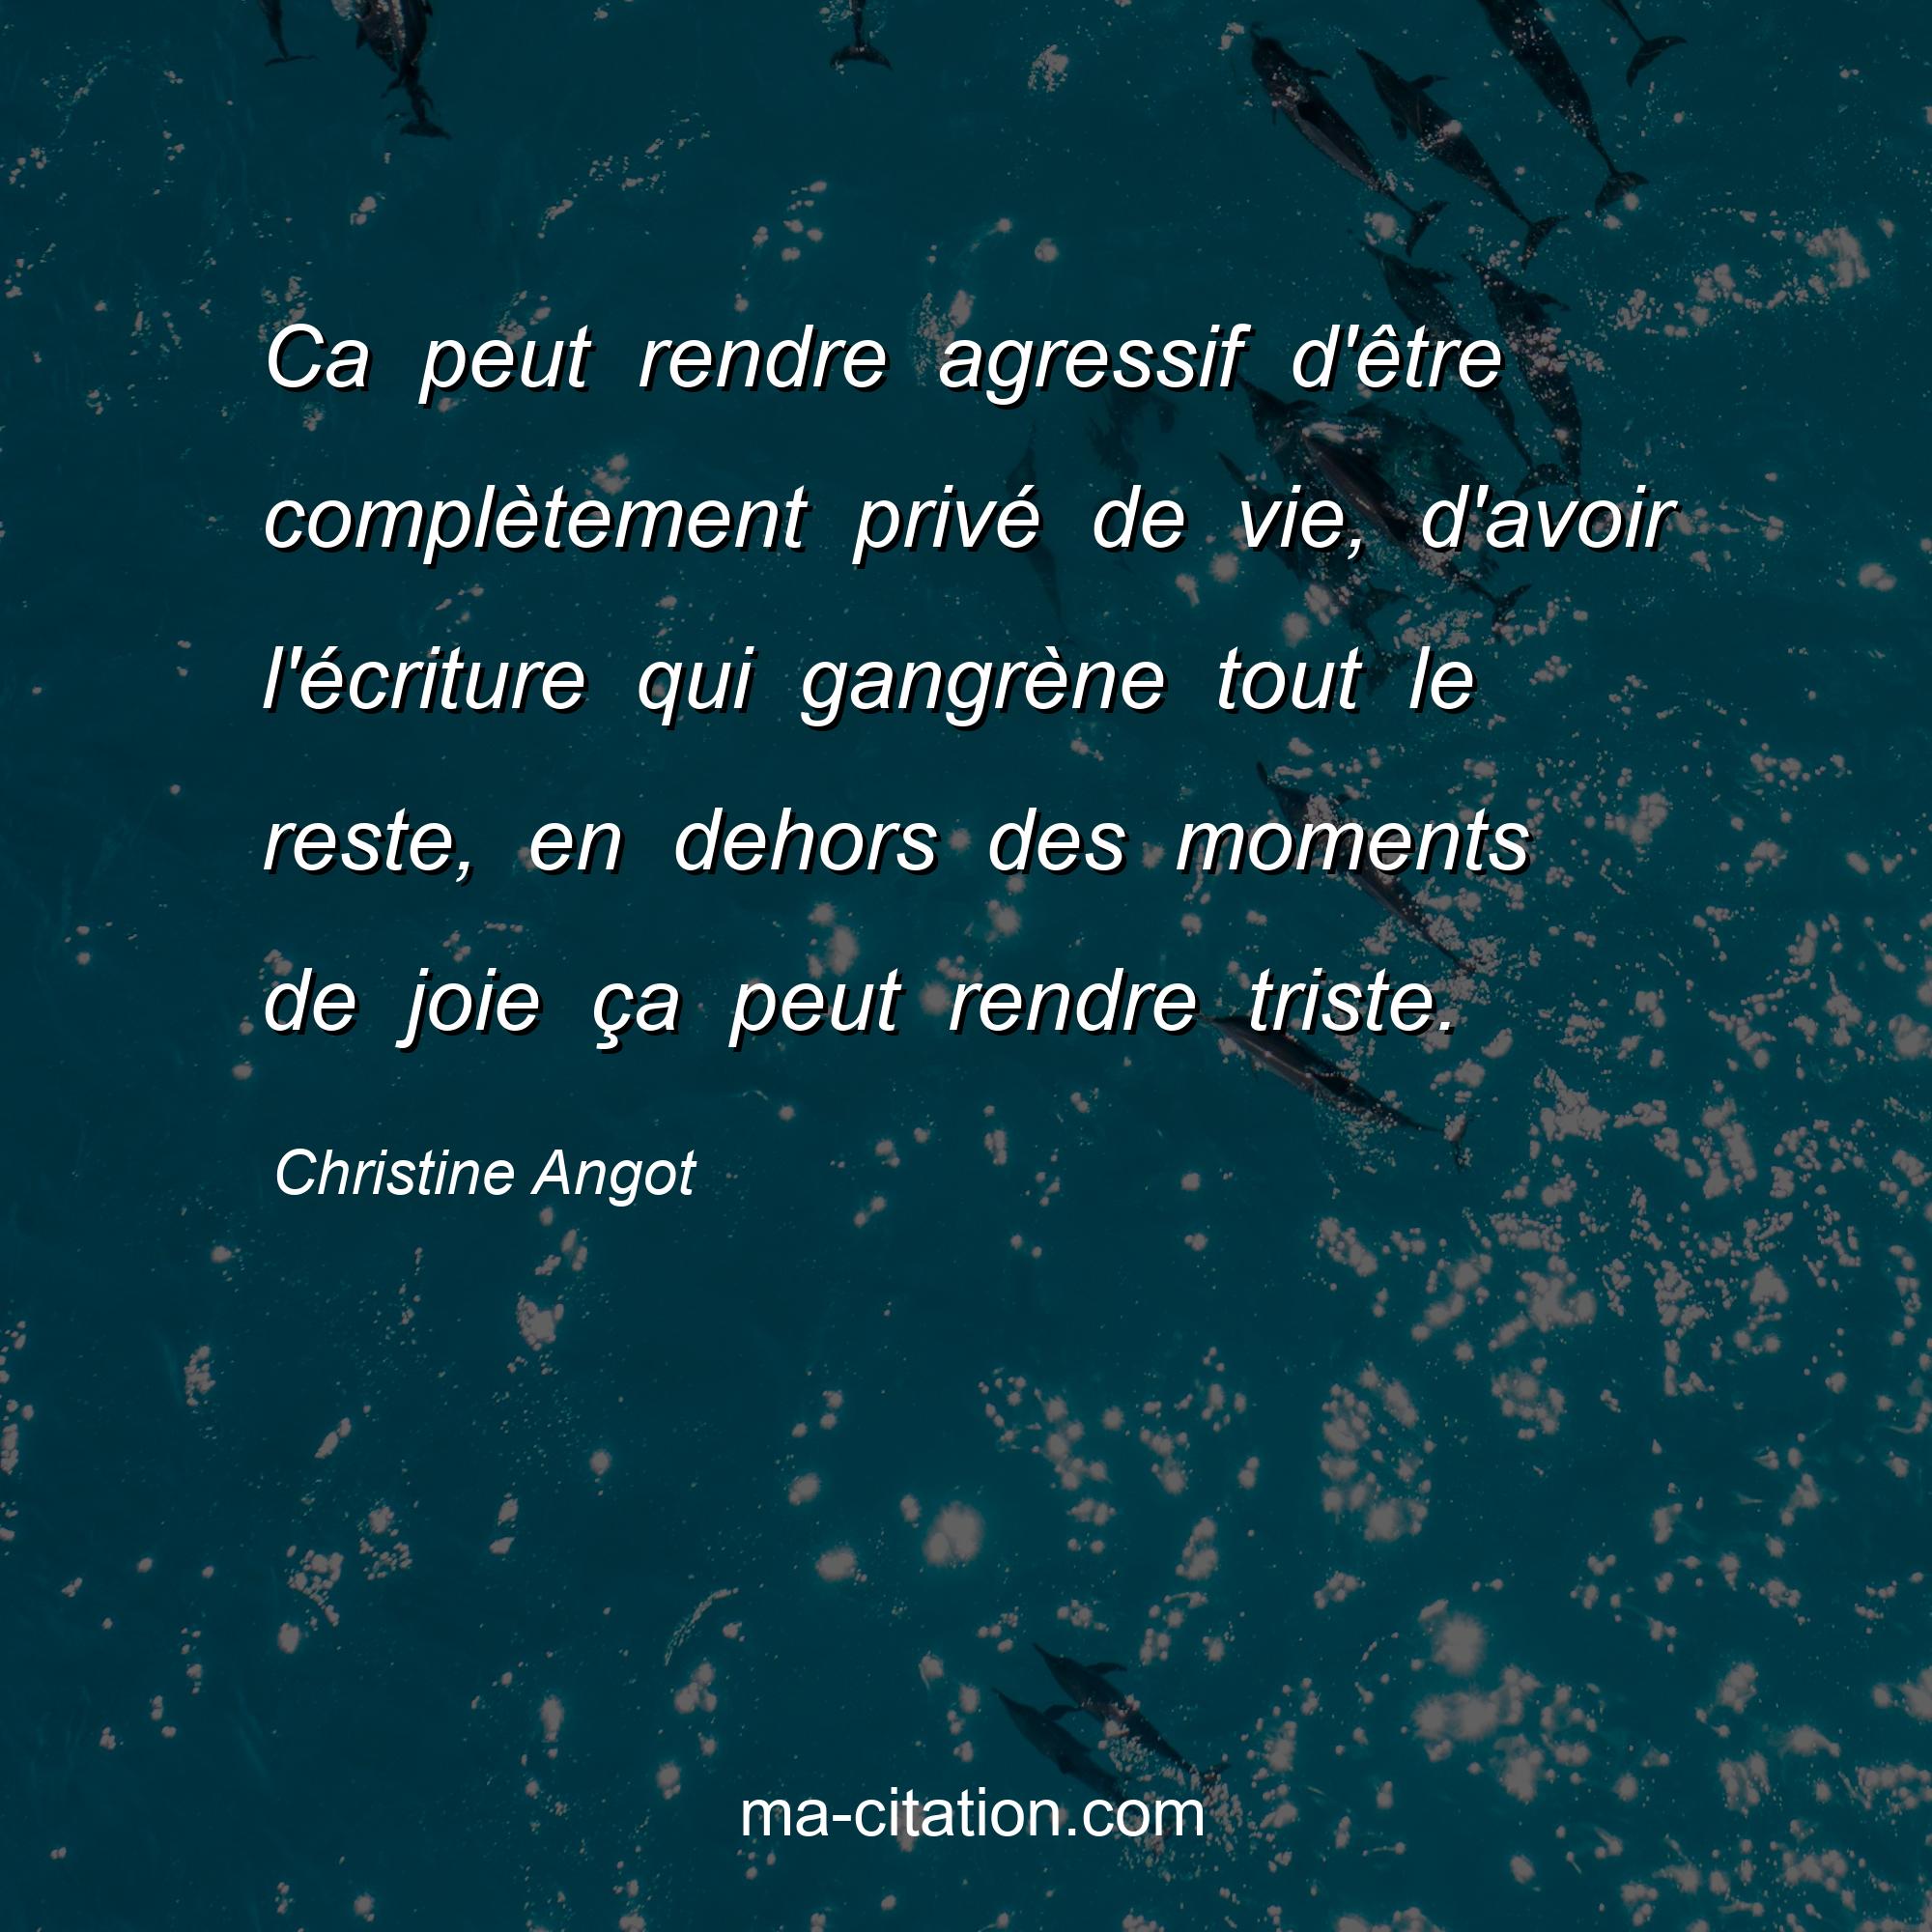 Christine Angot : Ca peut rendre agressif d'être complètement privé de vie, d'avoir l'écriture qui gangrène tout le reste, en dehors des moments de joie ça peut rendre triste.